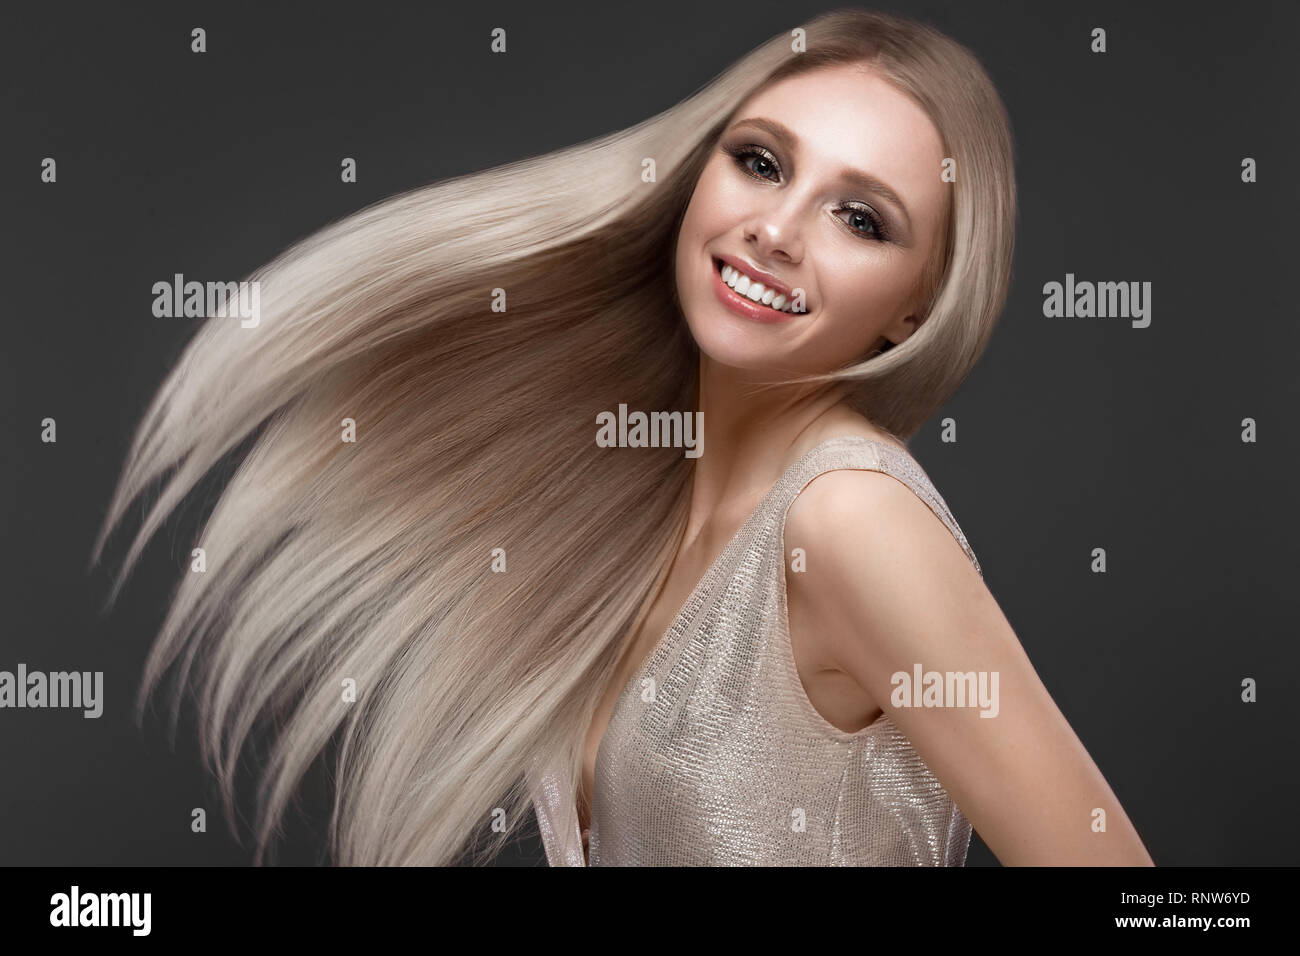 Schöne blondes Mädchen in bewegen perfekt glattes Haar mit klassischen Make-up. Beauty Gesicht. Stockfoto